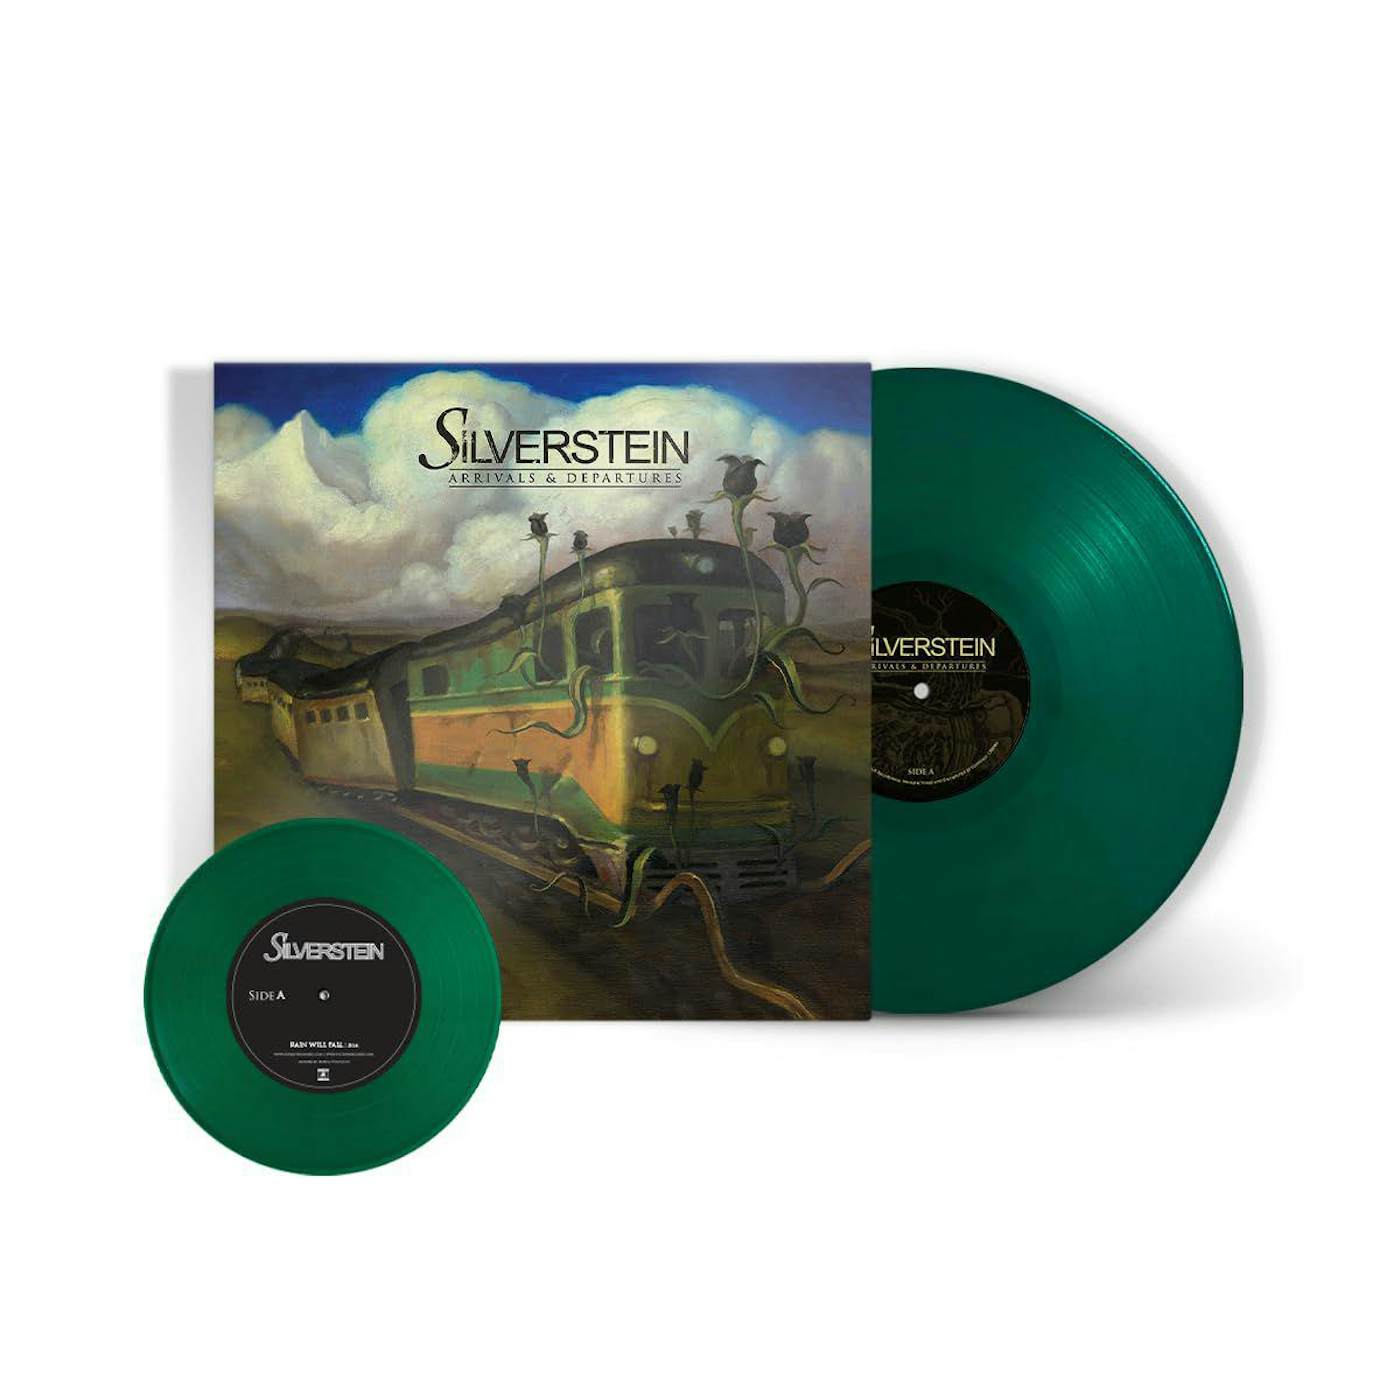 Silverstein Arrivals & Departures (15th Anniversary) Vinyl Record